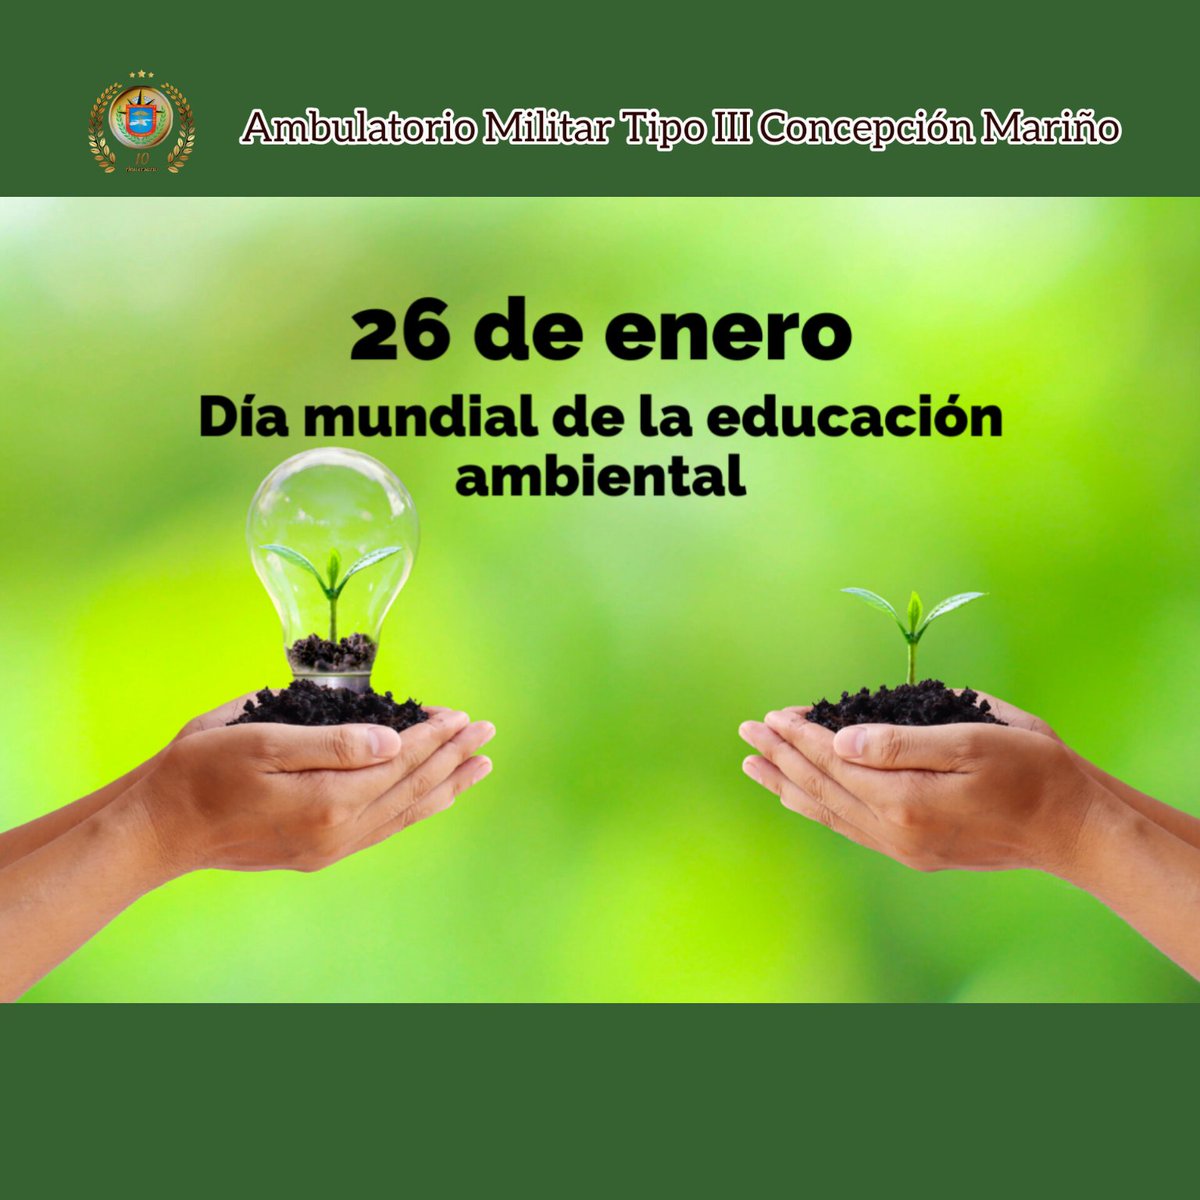 #26deEnero
Día Mundial de la Educación Ambiental, para concienciar a los ciudadanos y revertir los daños ambientales en el planeta.
#ambumilcm
#RedSanitariaMilitar